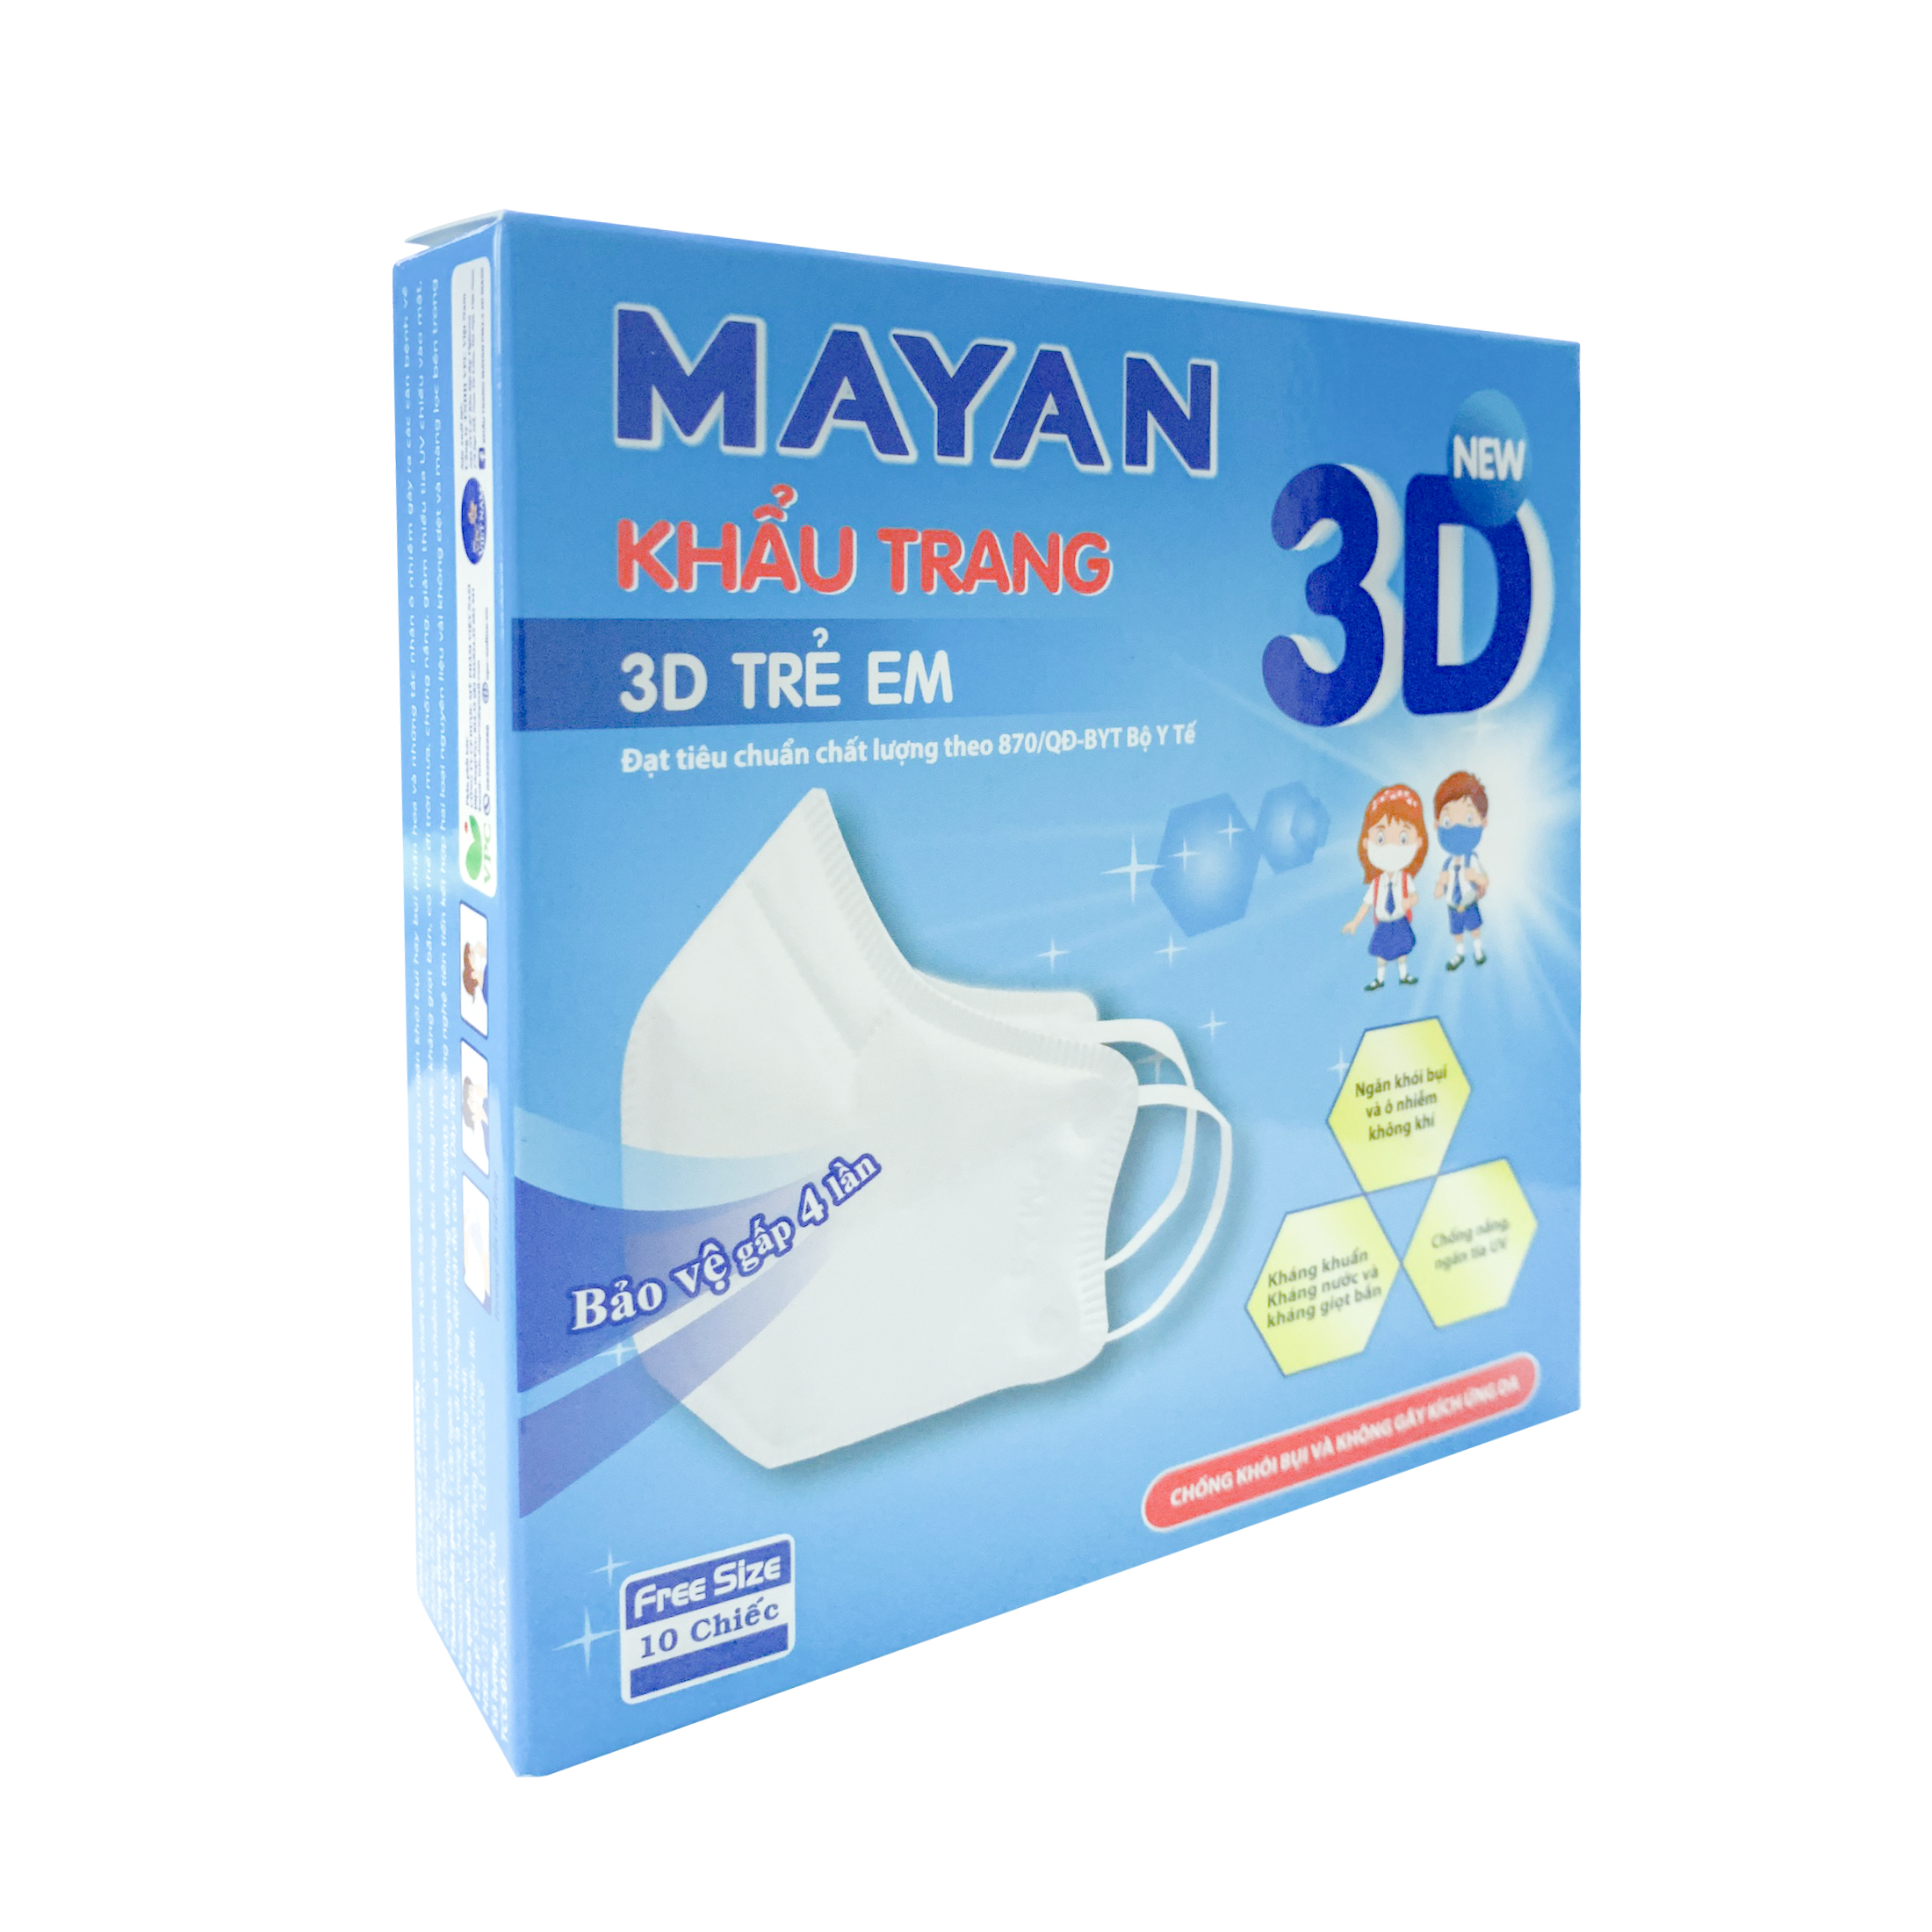 Hộp 10 Miếng Khẩu Trang Mayan 3D Mask Chống Bụi PM 2.5 Size Trẻ Em (Loại 5 lớp Vải không dệt SSMMS)